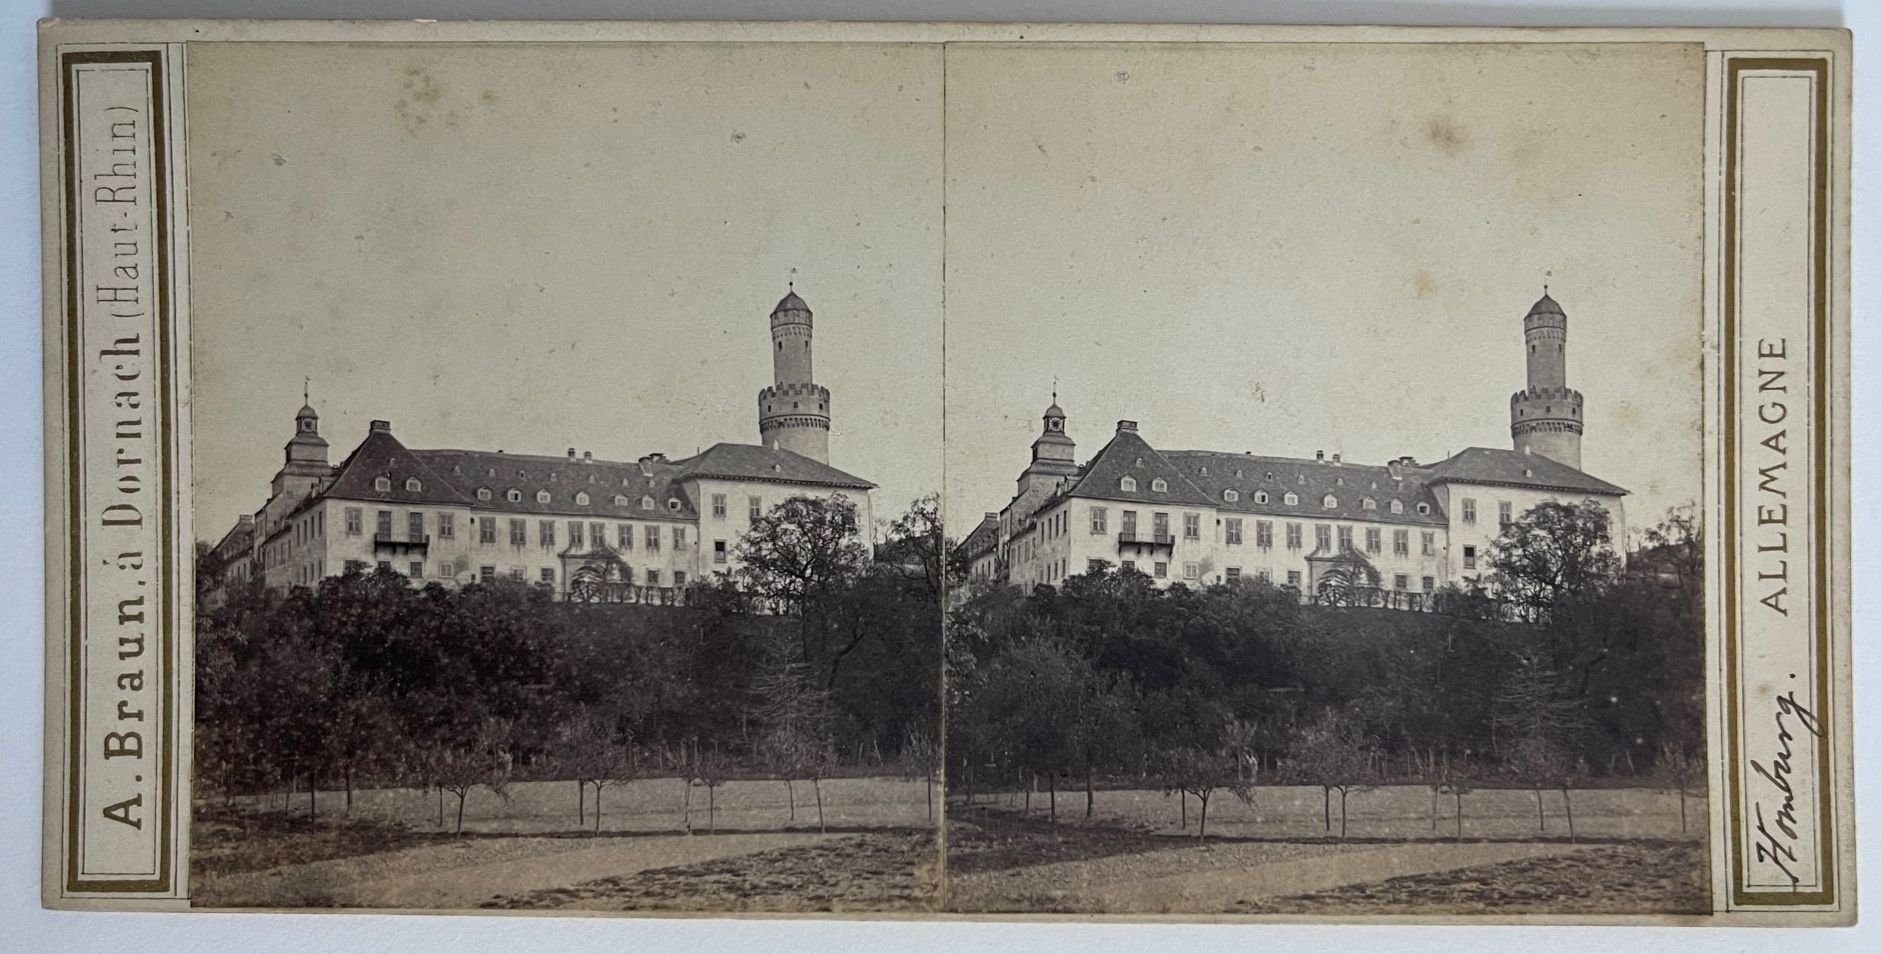 Adolphe Braun, No. 4326, Homburg, Allemagne, Das Schloss, 8.6.1865 (Taunus-Rhein-Main - Regionalgeschichtliche Sammlung Dr. Stefan Naas CC BY-NC-SA)